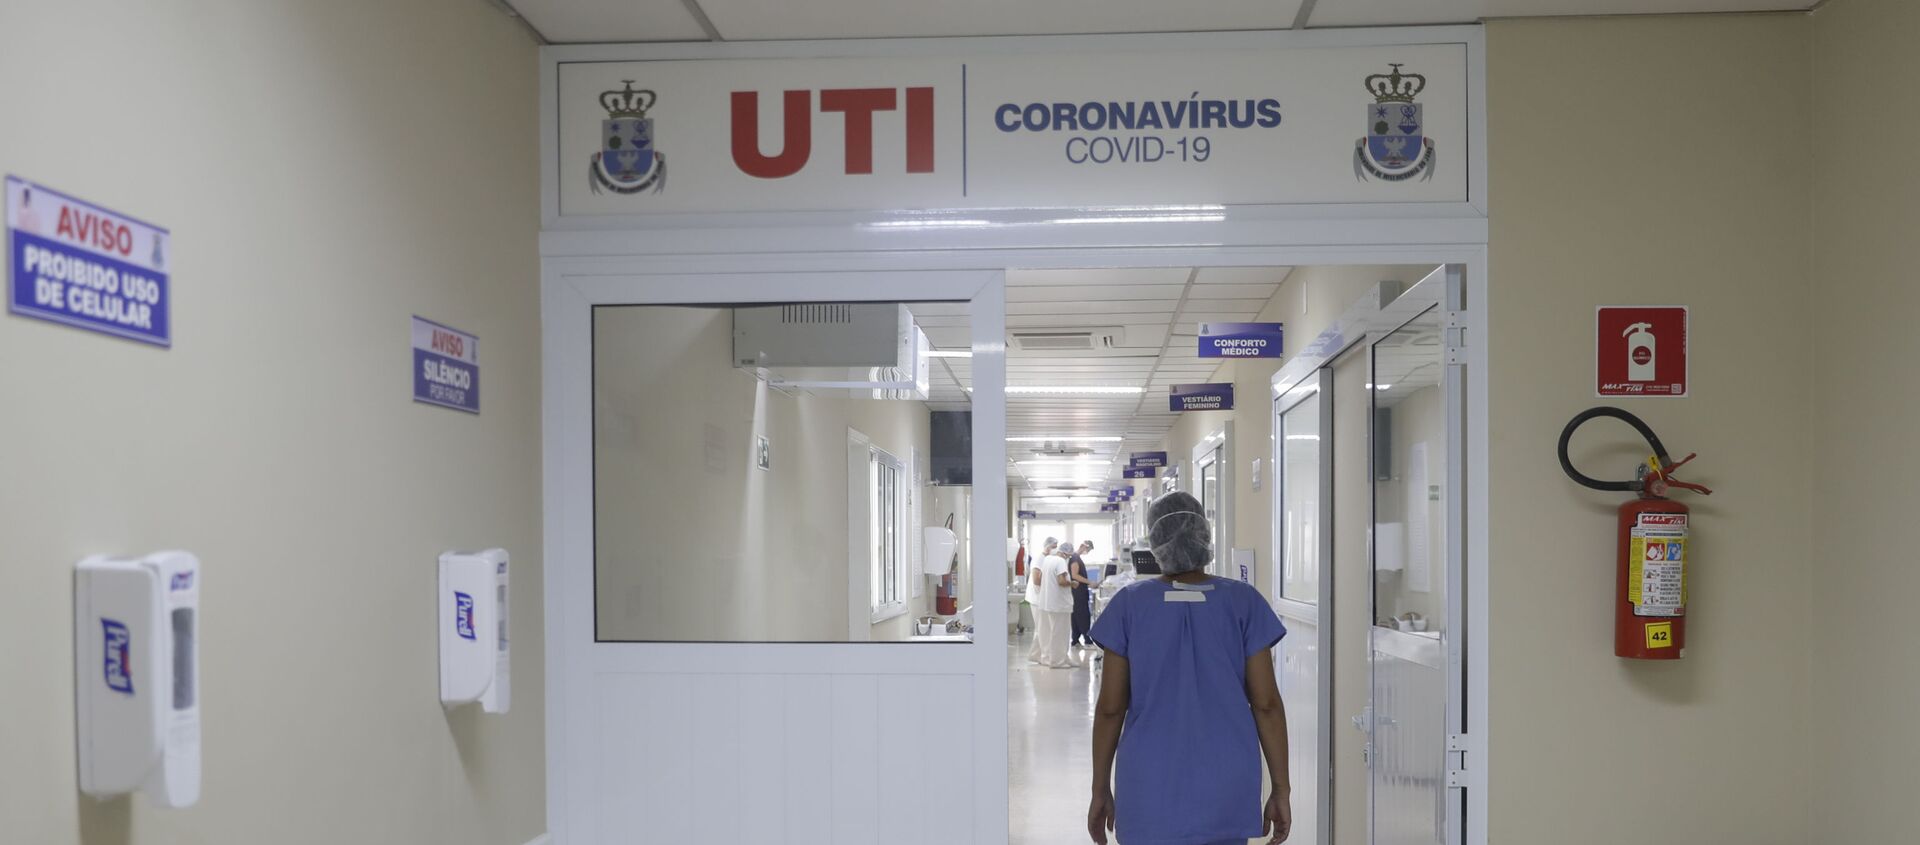 Funcionária caminha para UTI da Santa Casa, hospital na cidade de Jaú, em São Paulo, que opera com capacidade máxima devido à pandemia da COVID-19 - Sputnik Brasil, 1920, 17.02.2021